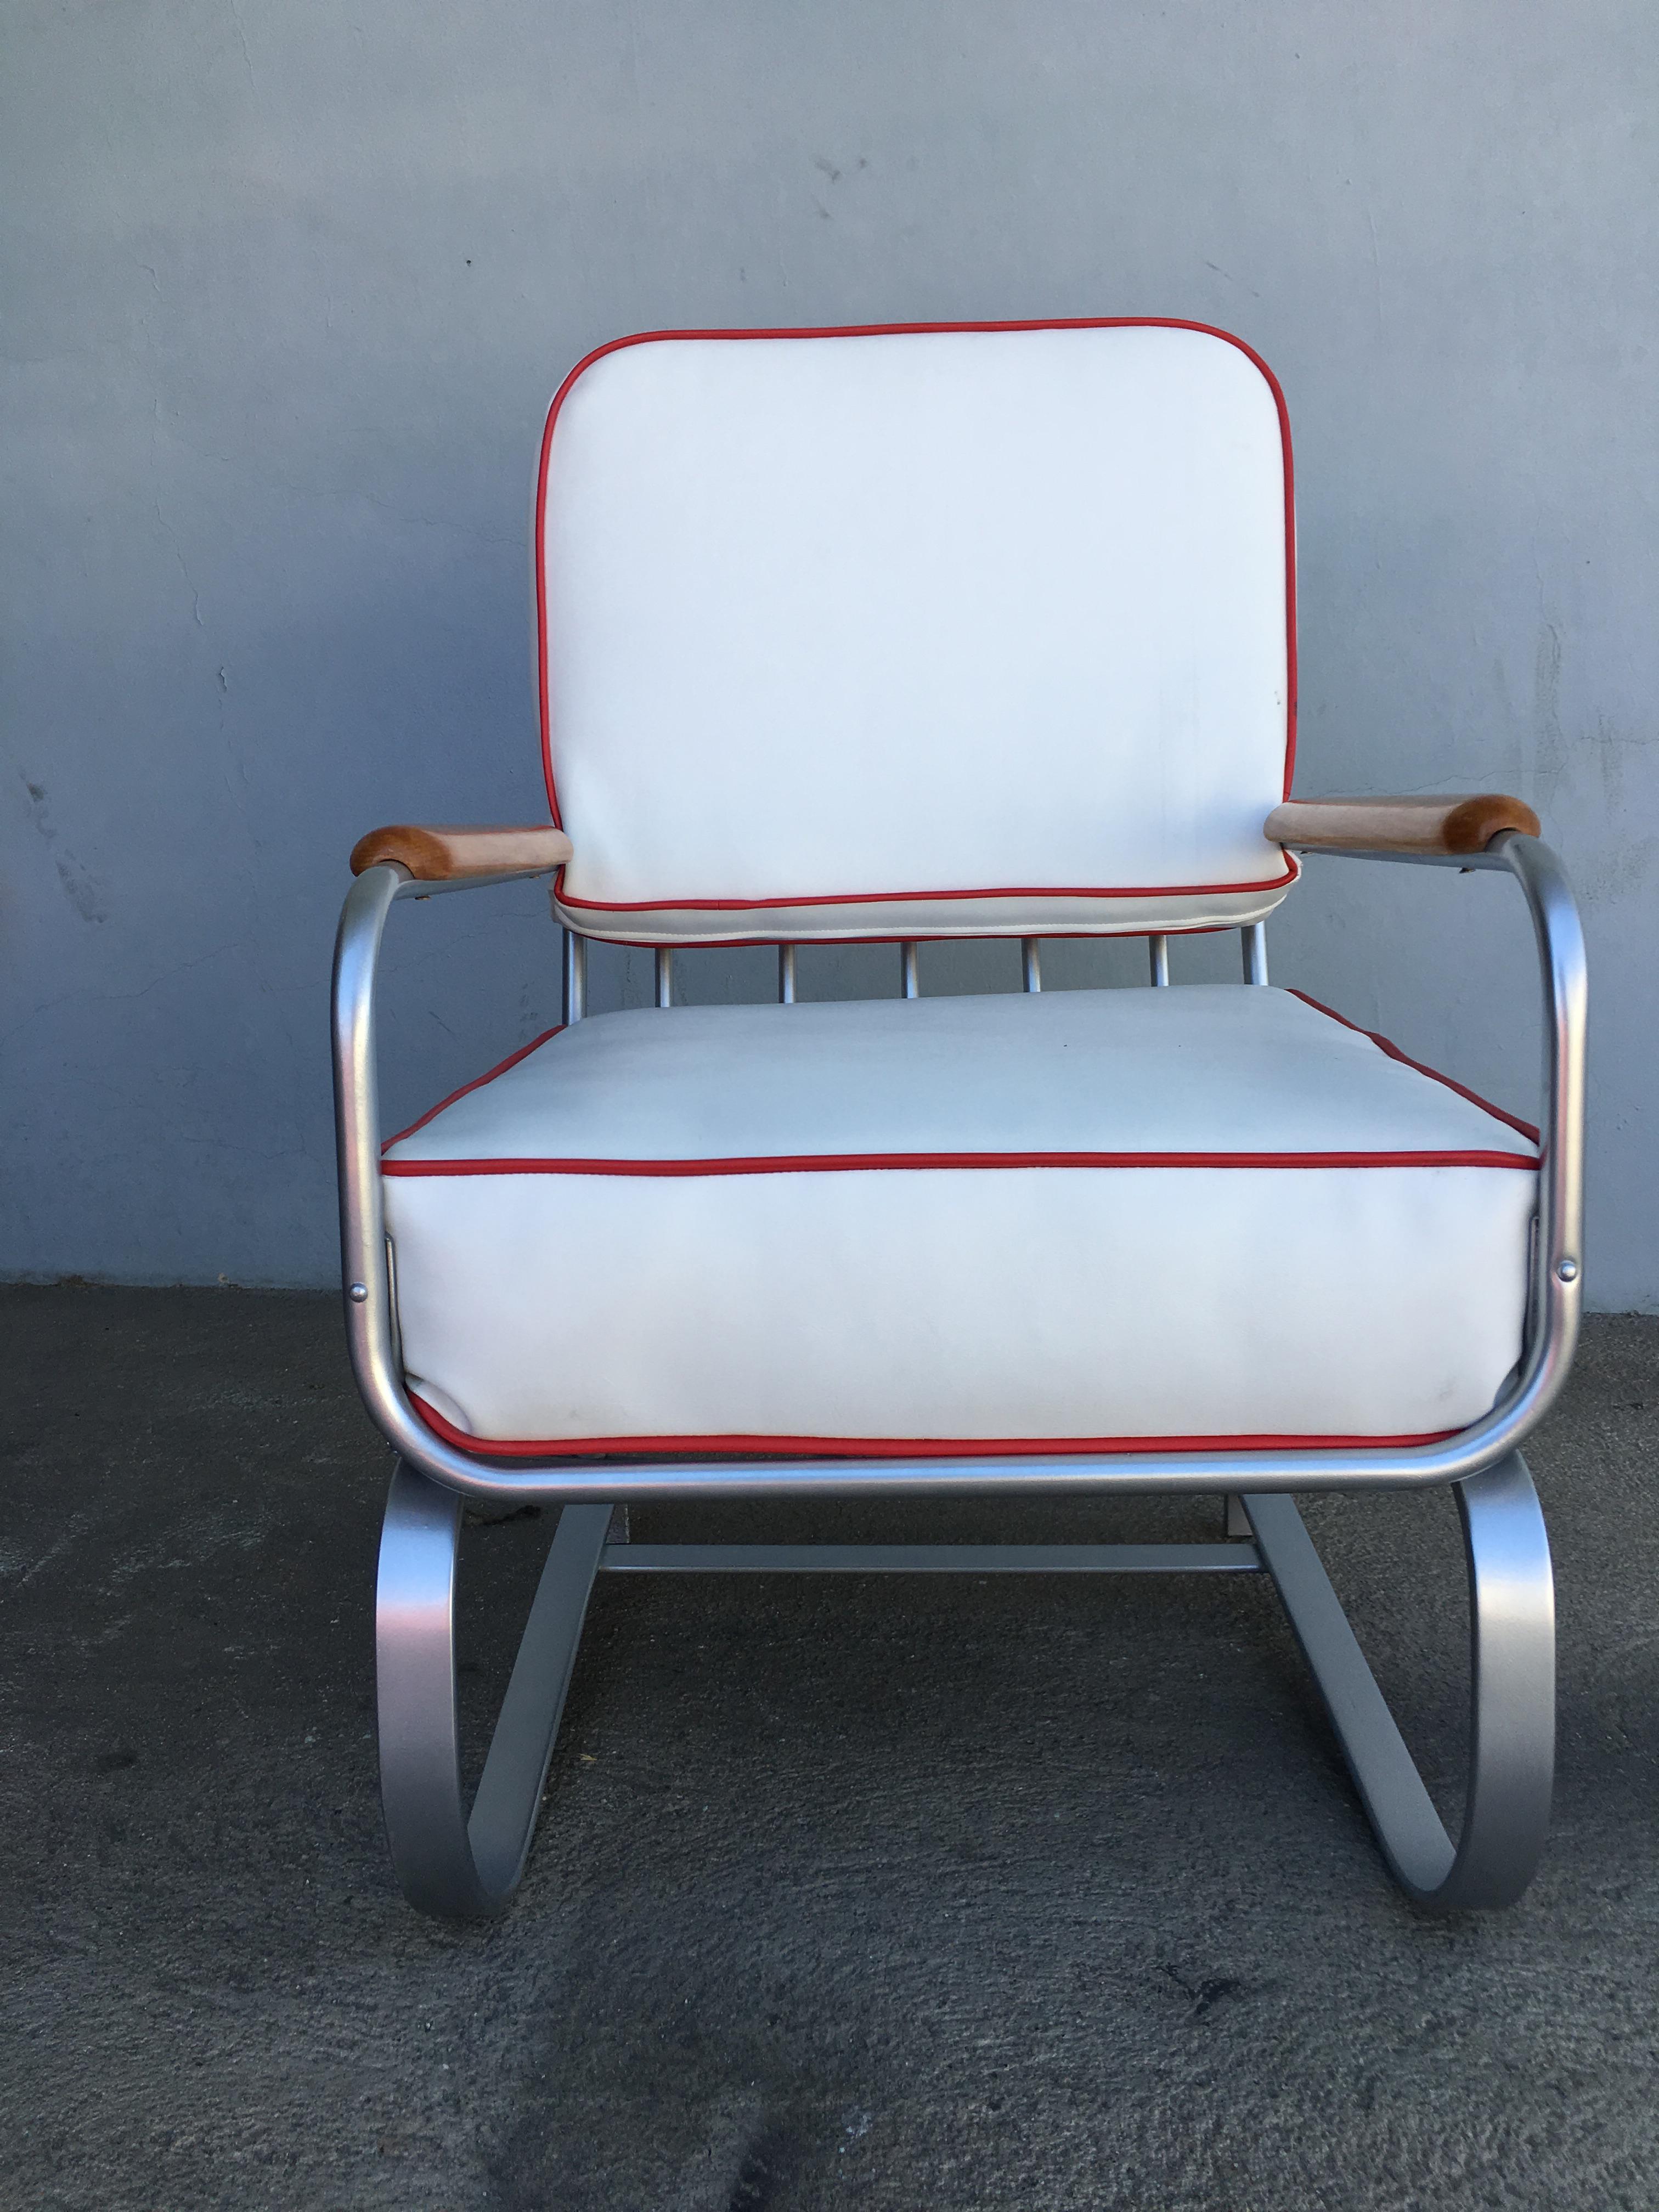 Verchromter Art-Déco-Sessel, bestehend aus einem verchromten Gestell, das sich nahtlos in die Form der flachen Eisenbeine, der Arme und der Rückenlehne des stromlinienförmigen Sitzes einfügt. Die Armlehnen sind mit leicht gebeiztem Nussbaumholz